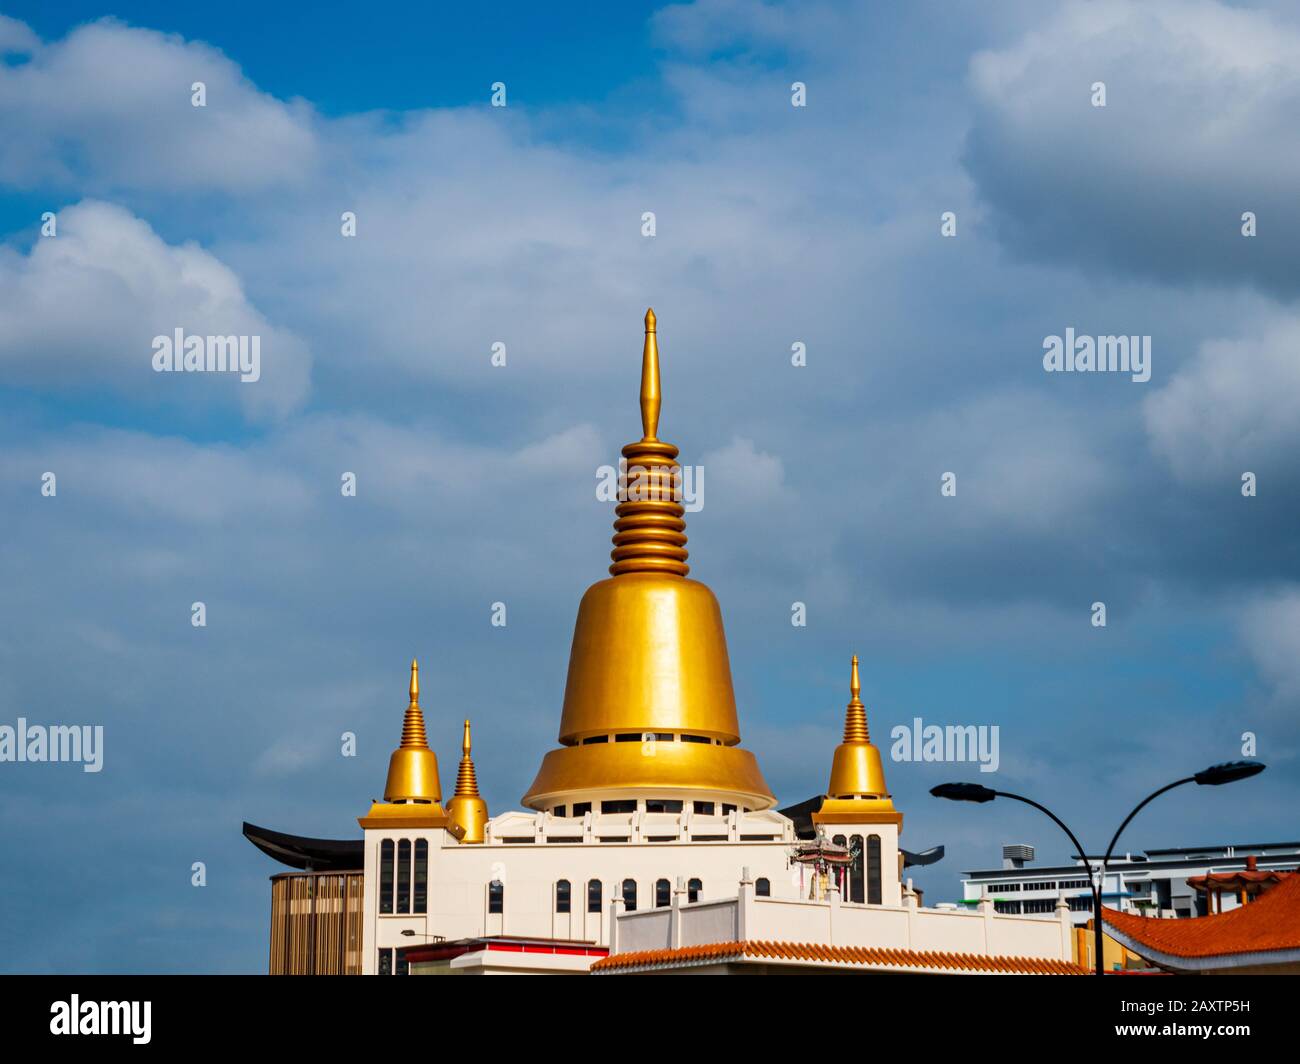 Singapur - 26. DEC 2019 - Goldener buddhistischer Stupa/Chaitya von Kong Meng San Phor Kark See Kloster, auch bekannt als Bright Hill Tempel in Singapur. Stockfoto